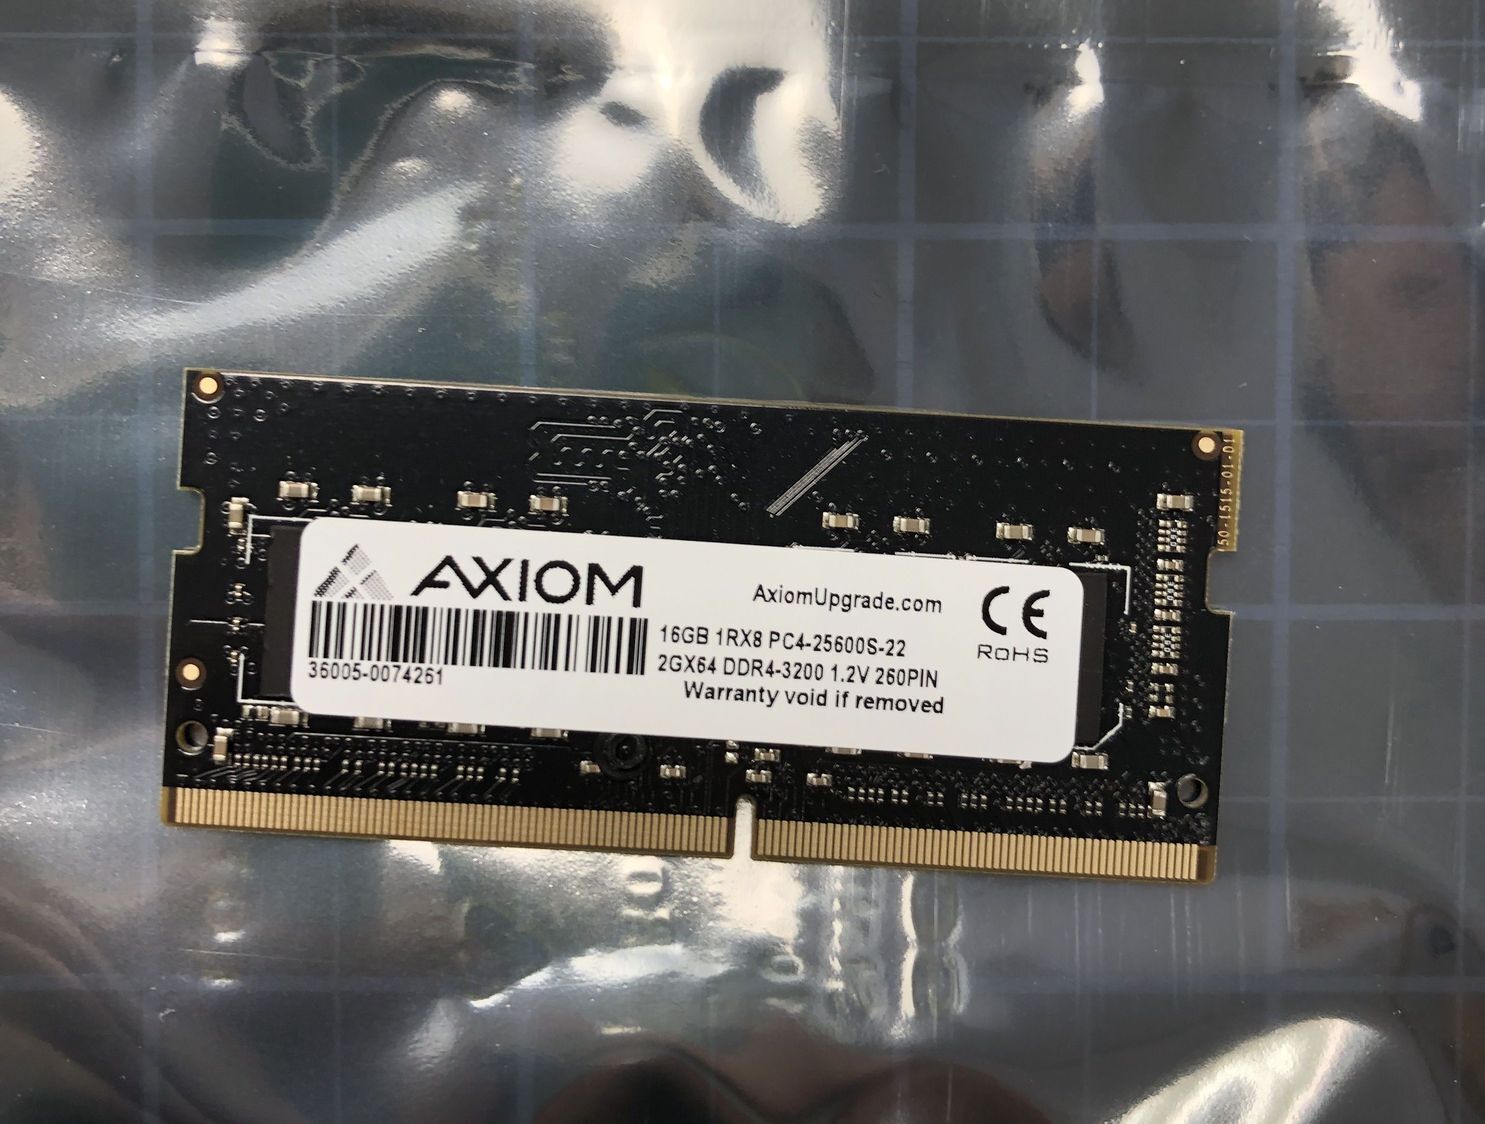 AXIOM 16GB RAM 1Rx8 PC4-25600S 2Gx64 DDR4-3200 1.2V SODIMM Memory 36005-0074261	